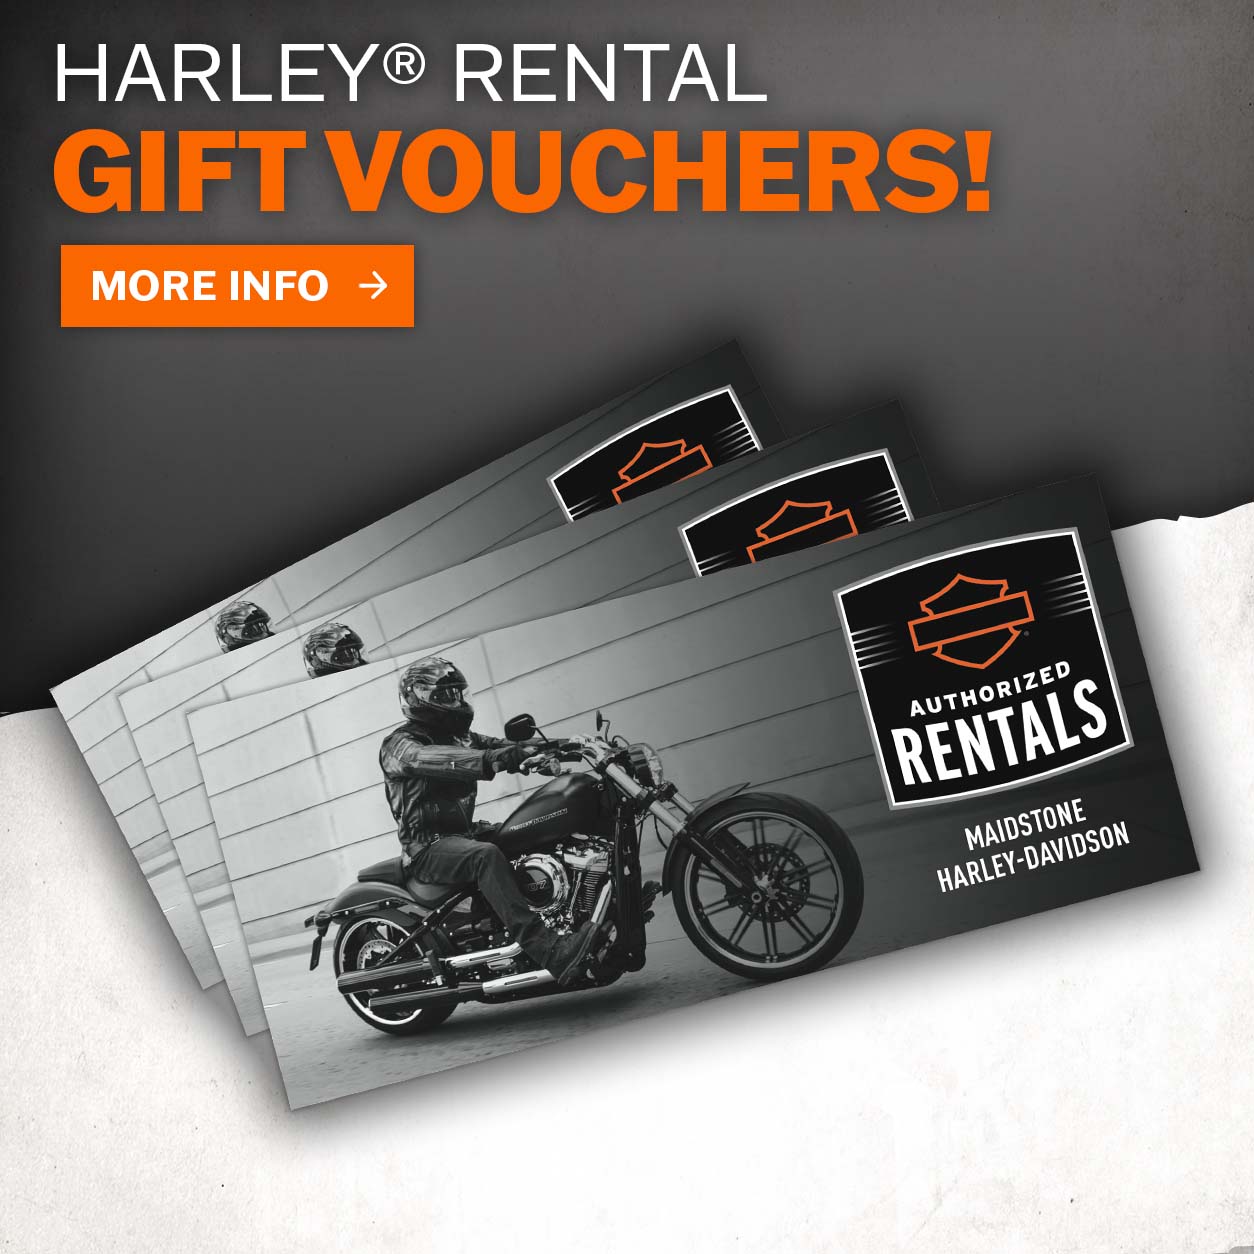 Maidstone Harley-Davidson Rentals Gift Vouchers